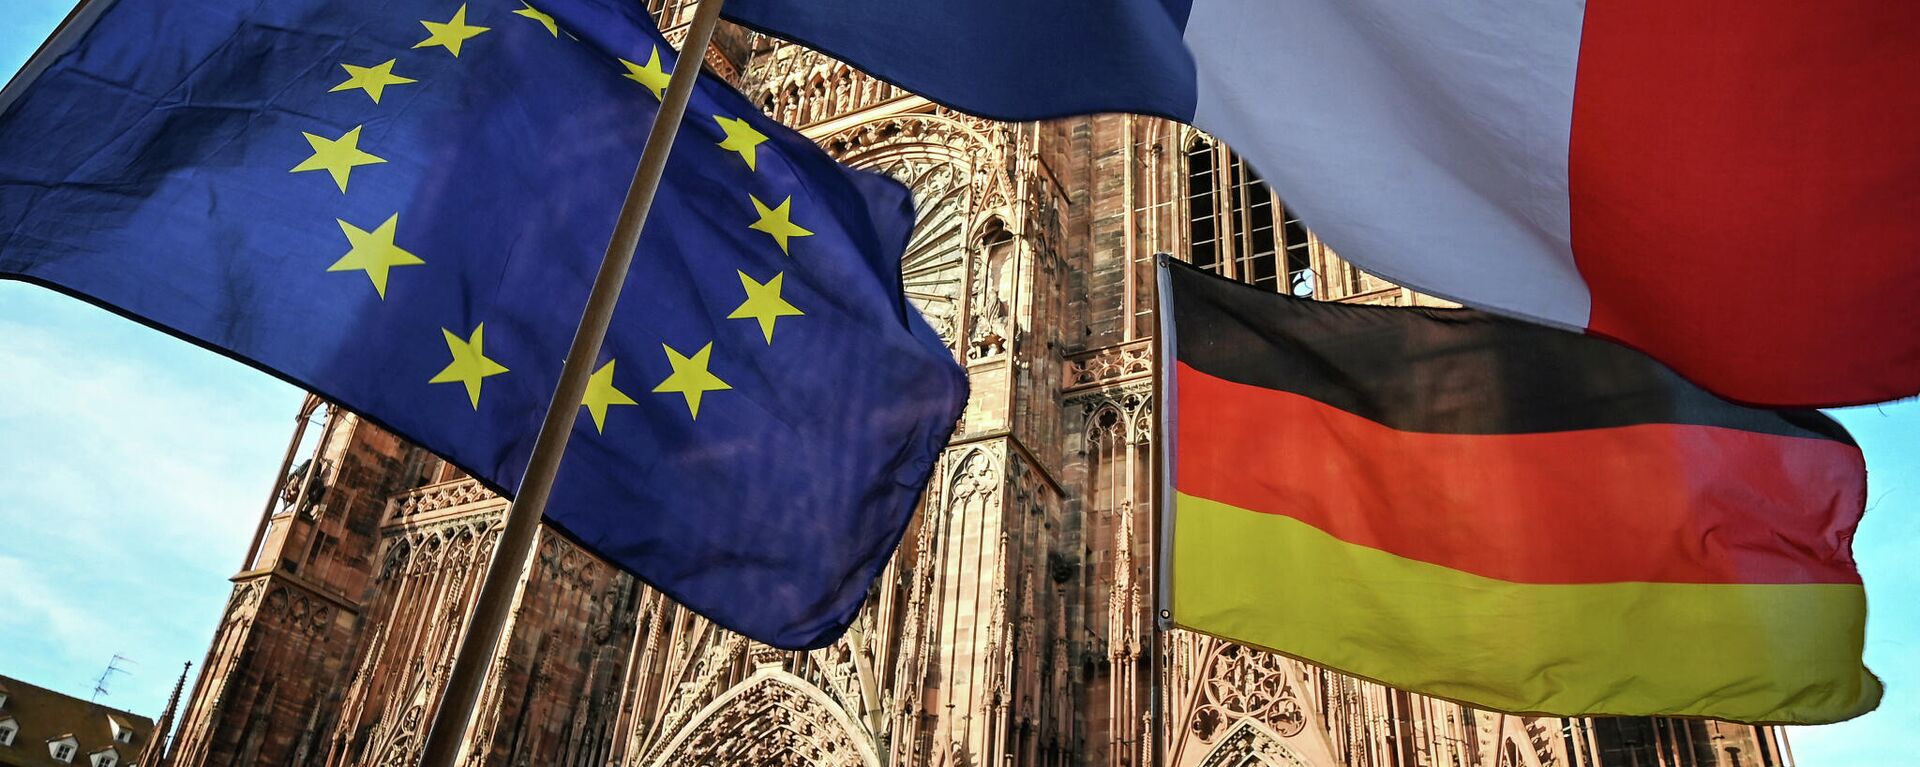 Las banderas de la UE, Francia y Alemania (imagen referencial) - Sputnik Mundo, 1920, 24.02.2021